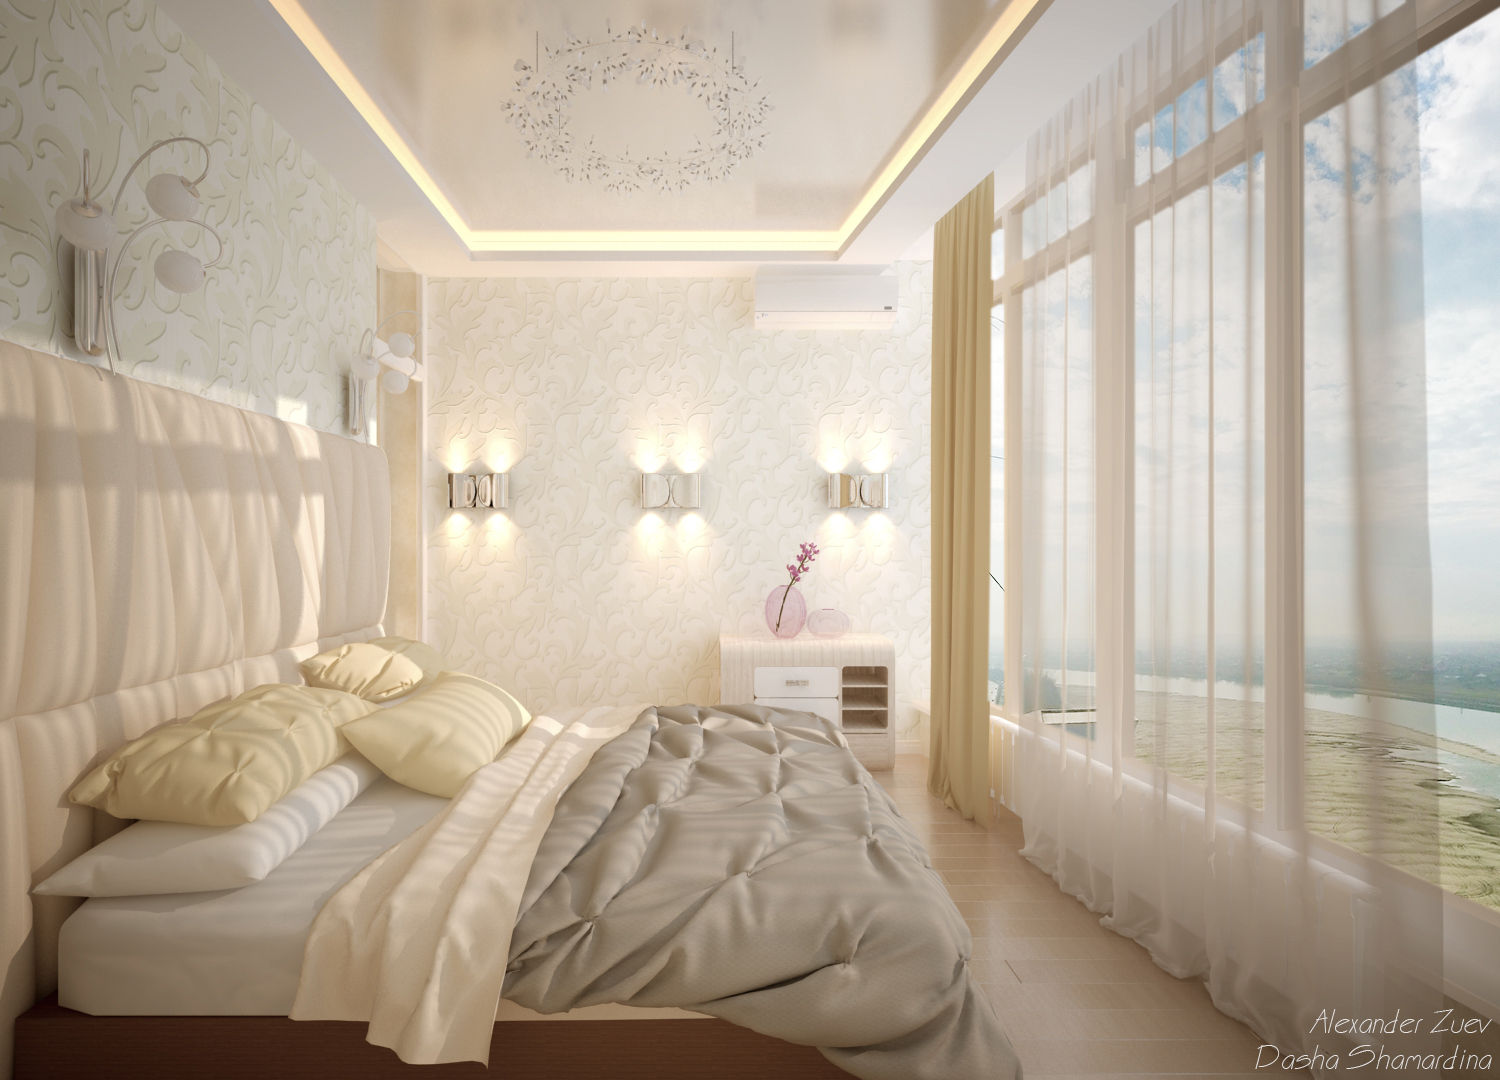 Дизайн спальни в современном стиле в ЖК "Новый город" (Краснодар), Студия интерьерного дизайна happy.design Студия интерьерного дизайна happy.design Modern style bedroom